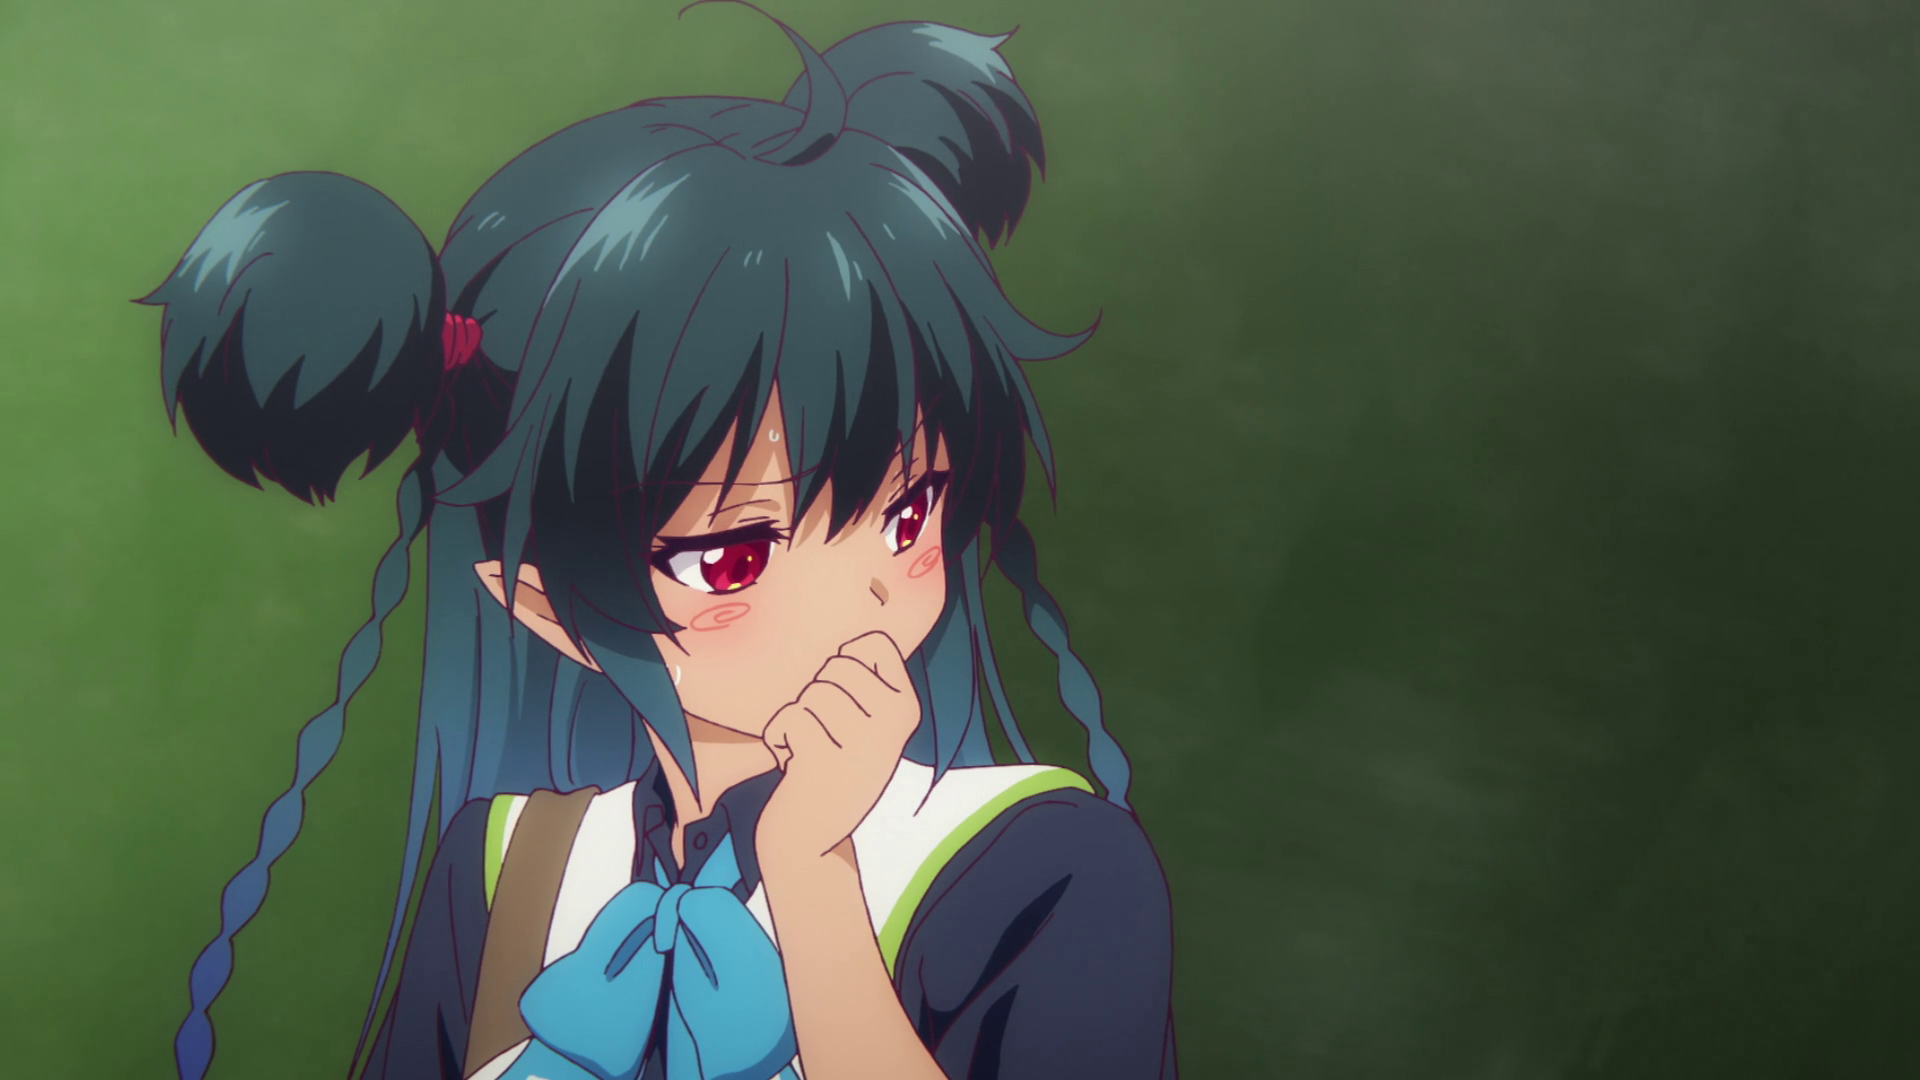 Anime Trending - Anime: Musaigen no Phantom World Trust me when I